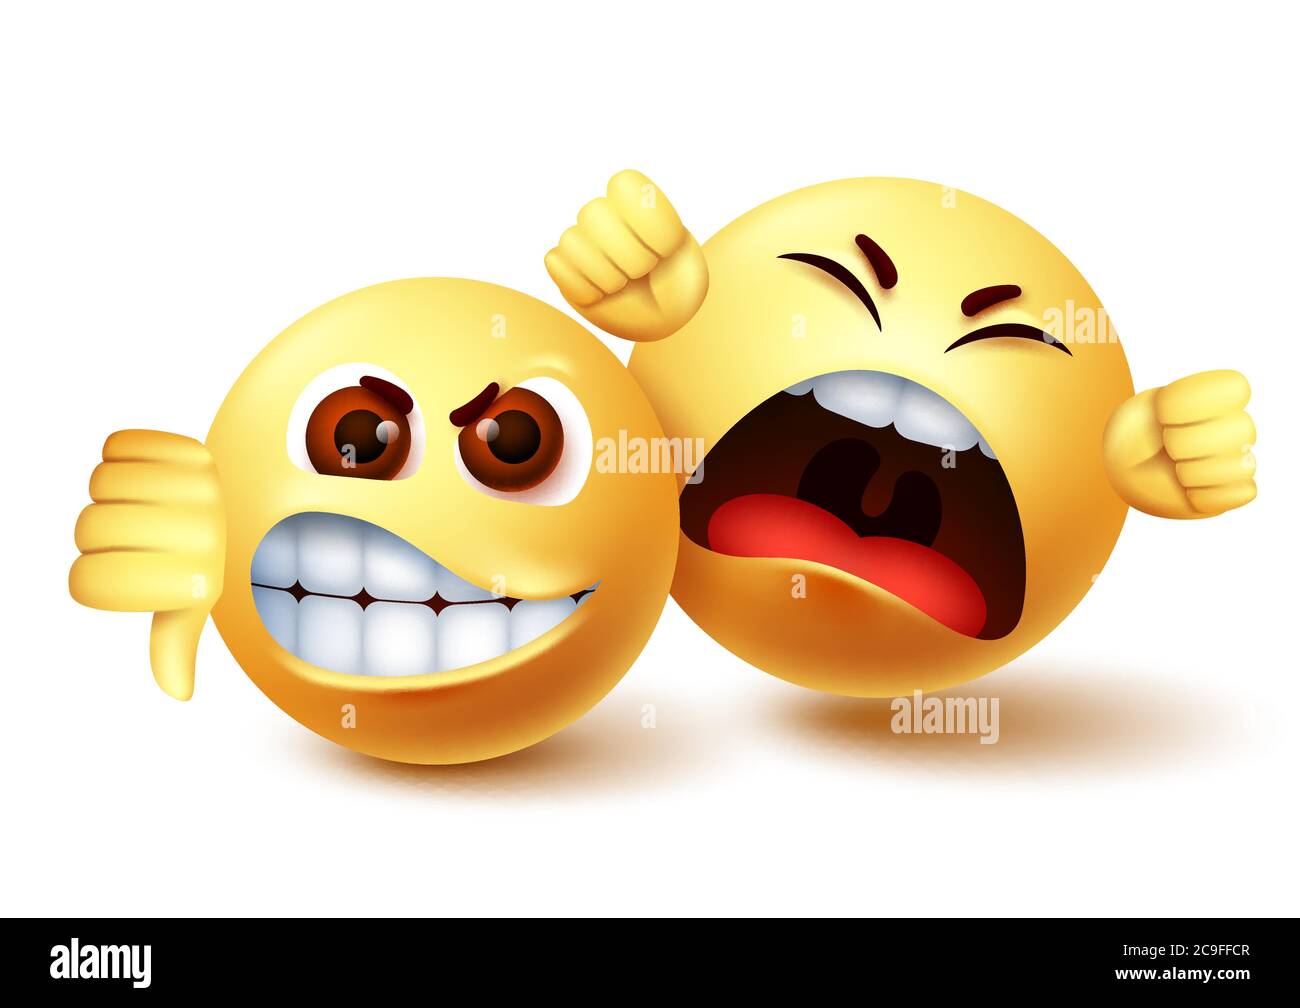 Smiley emoji arrabbiato caratteri vettoriale design. Emoji sorrida di pazzo e gridando dissenso con i pollici verso il basso gesto della mano. Illustrazione vettoriale. Illustrazione Vettoriale